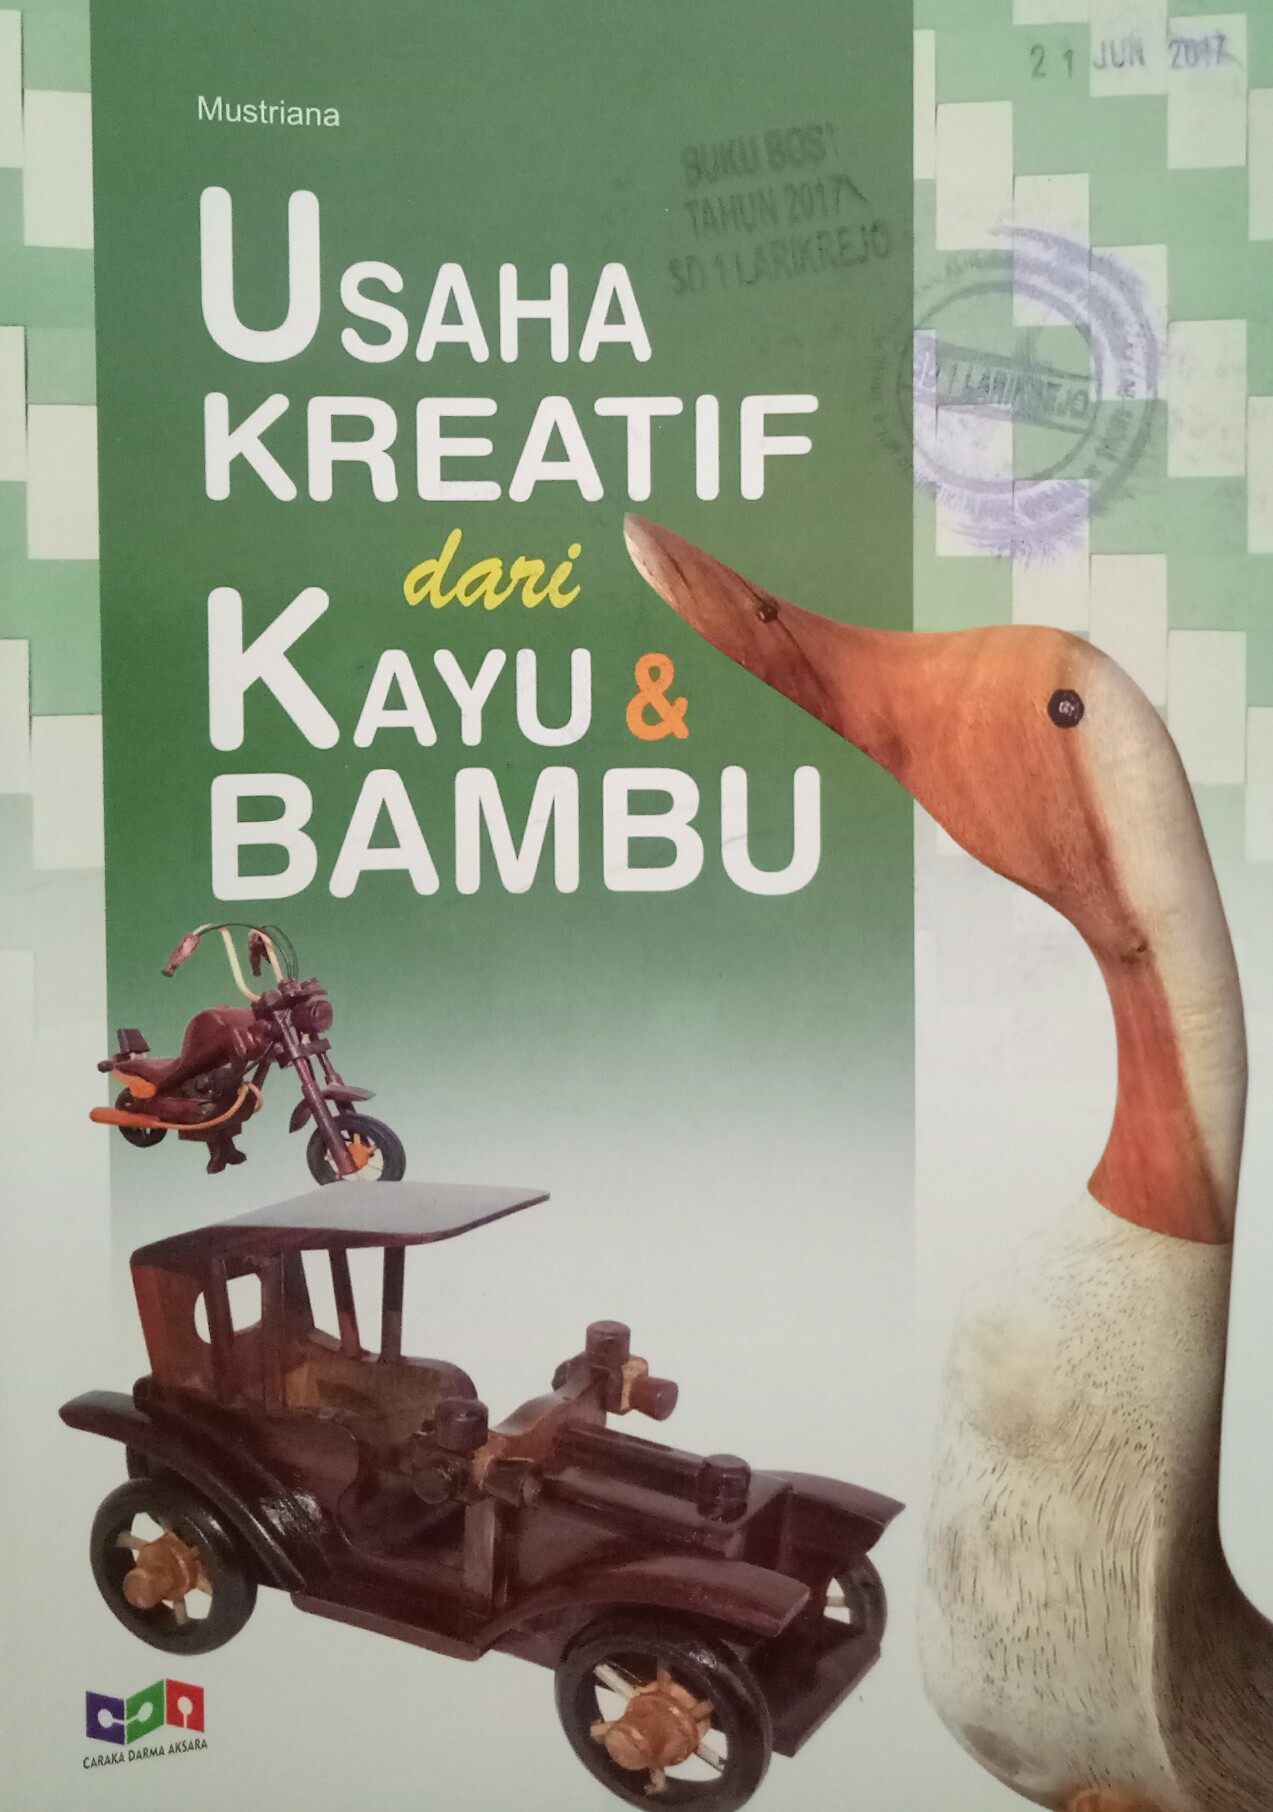 USAHA KREATIF dari KAYU & BAMBU